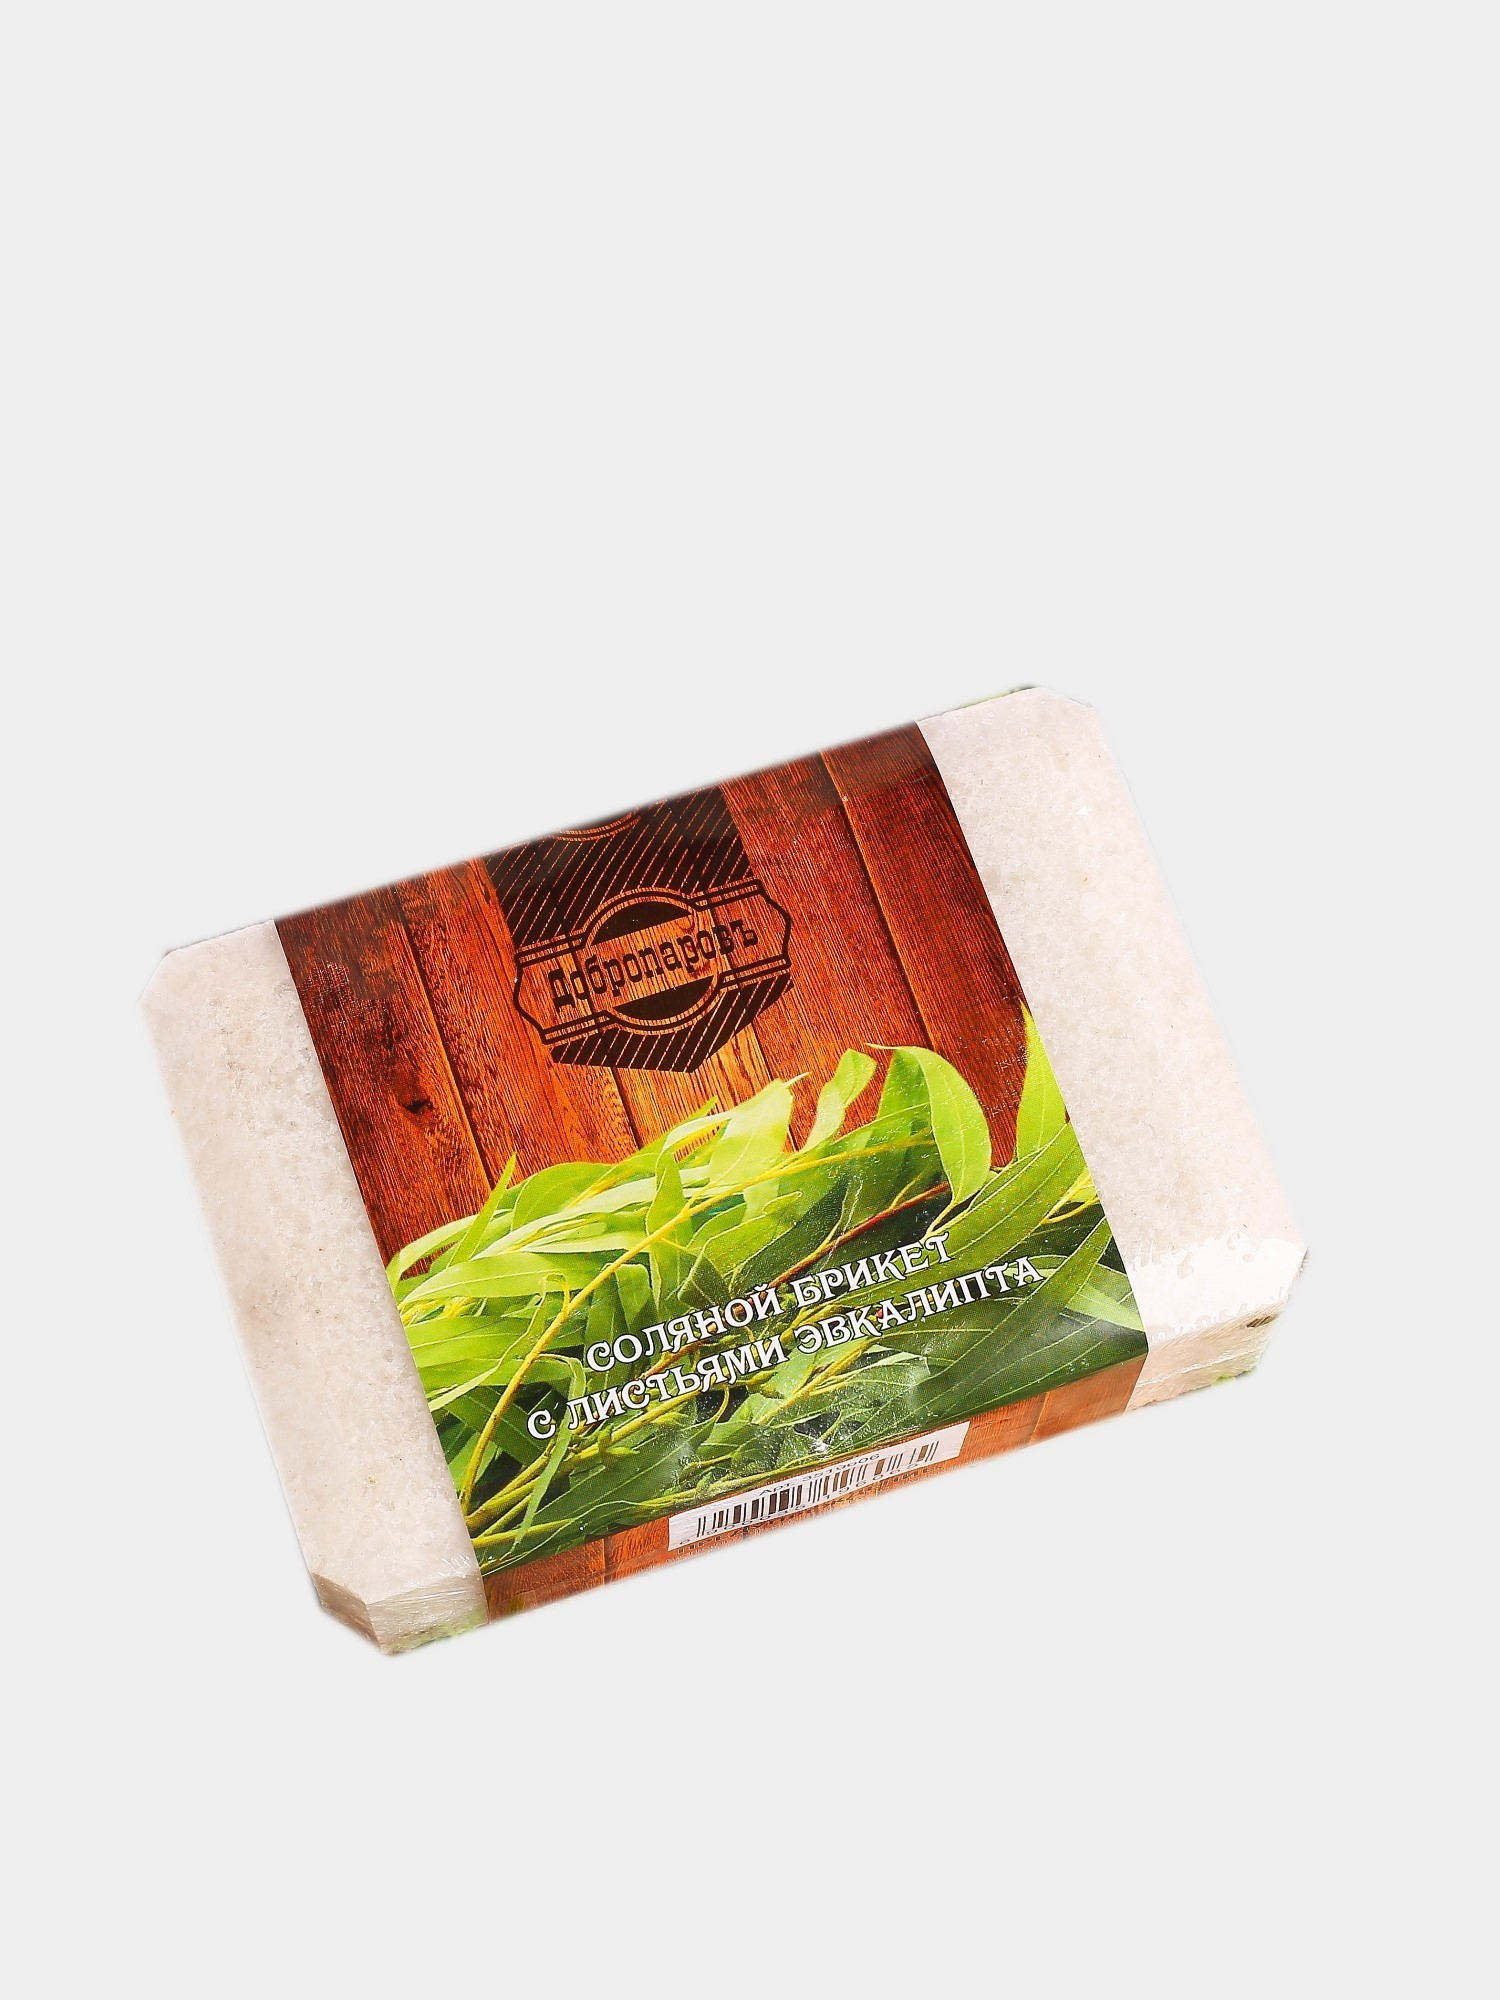 Соляной брикет для бани и сауны с листьями эвкалипта, 1,35 кг за 225 .